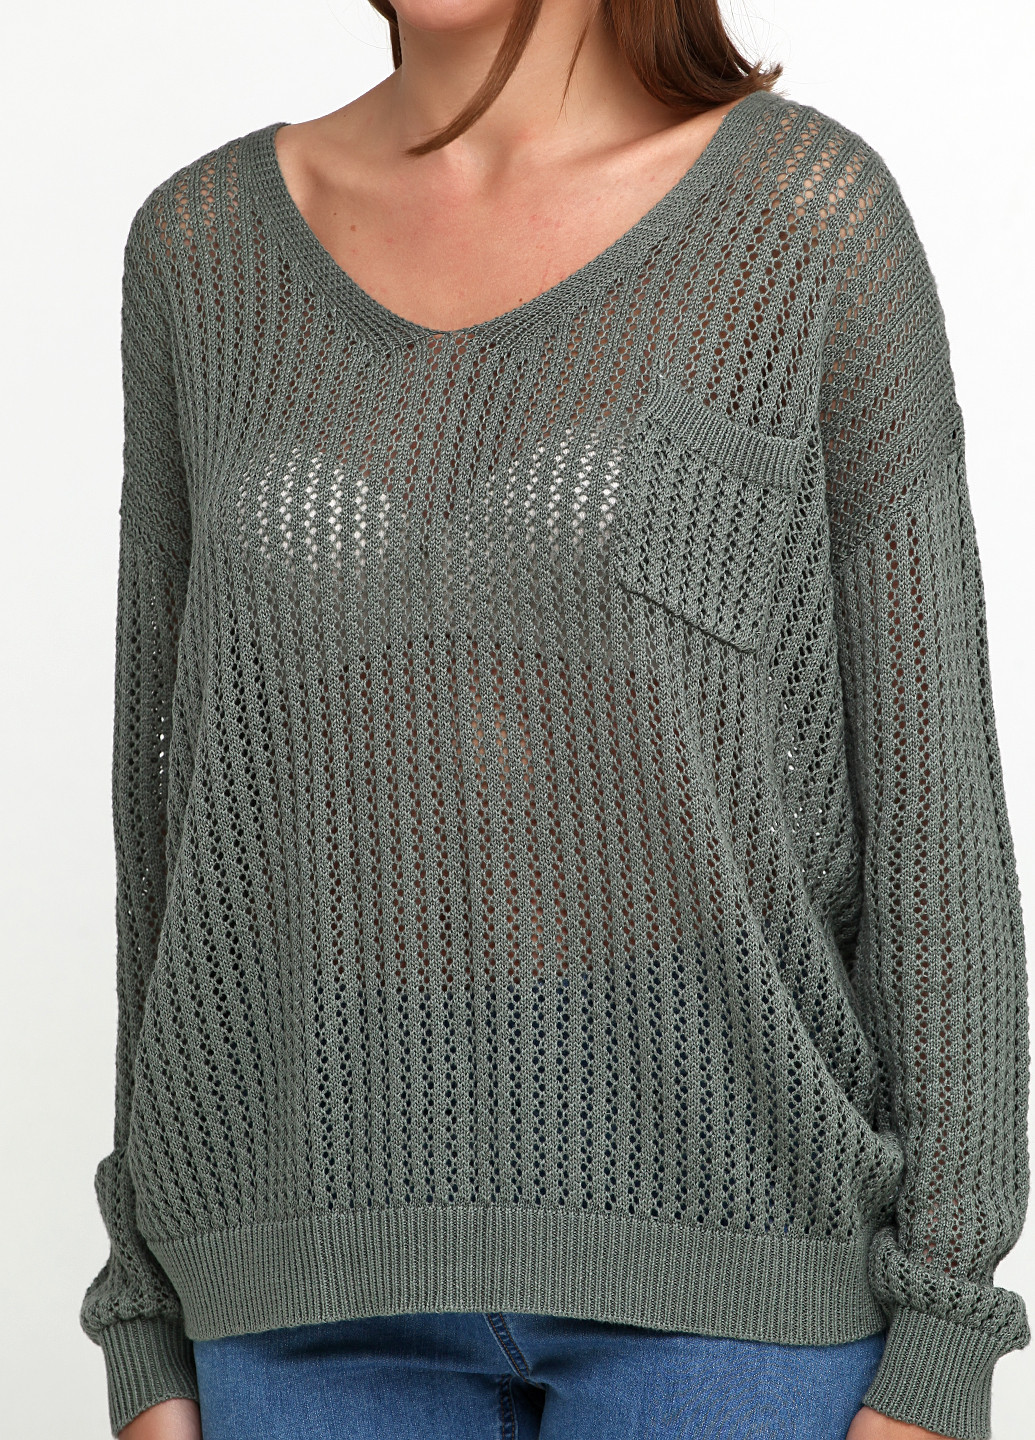 Оливковый (хаки) демисезонный пуловер пуловер Intown